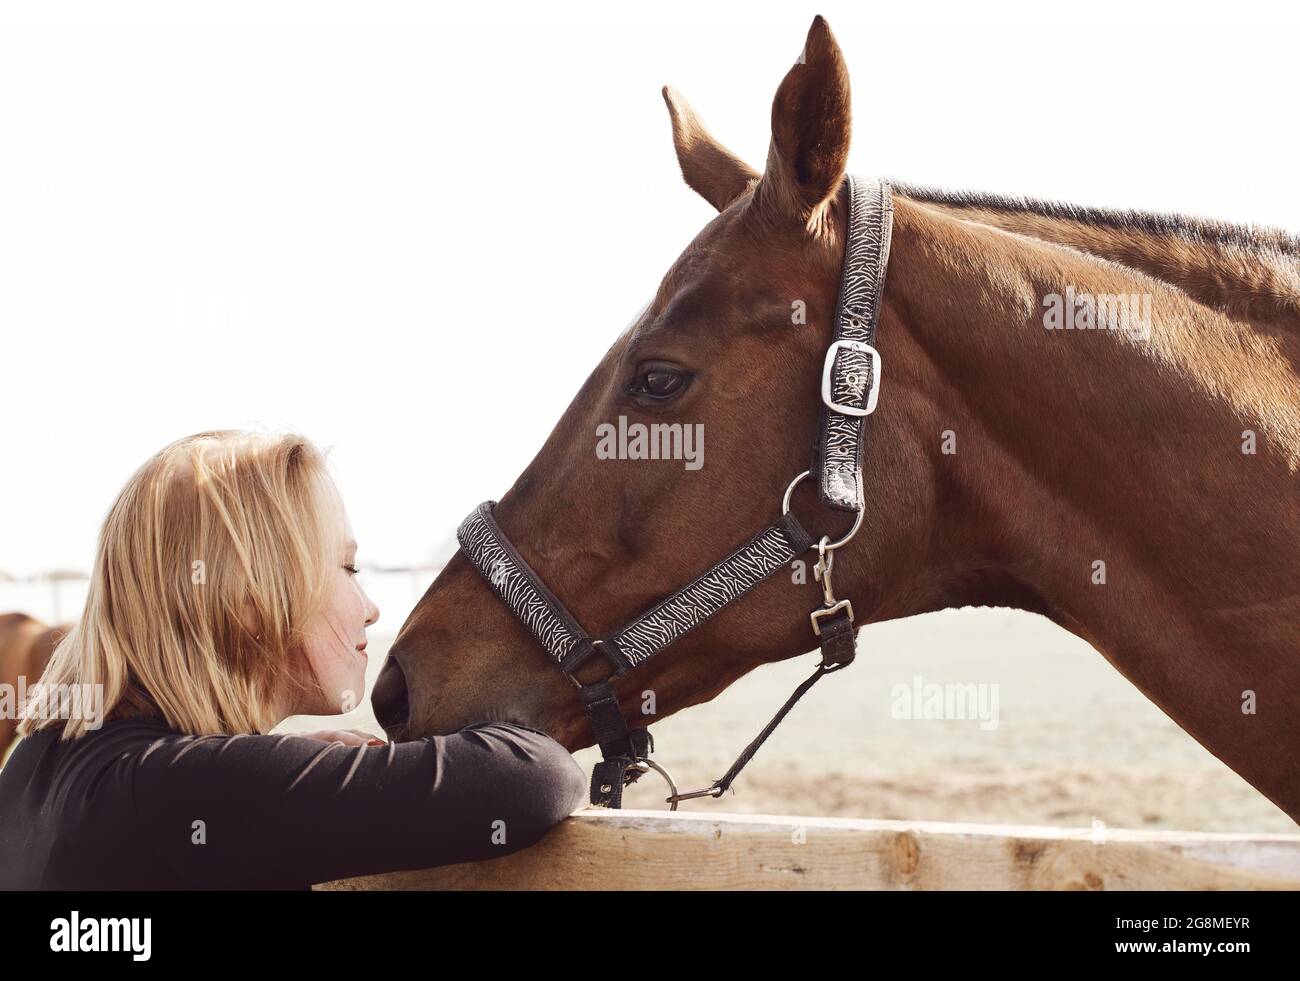 Fille embrassant un cheval - scène rurale dans des couleurs douces Banque D'Images